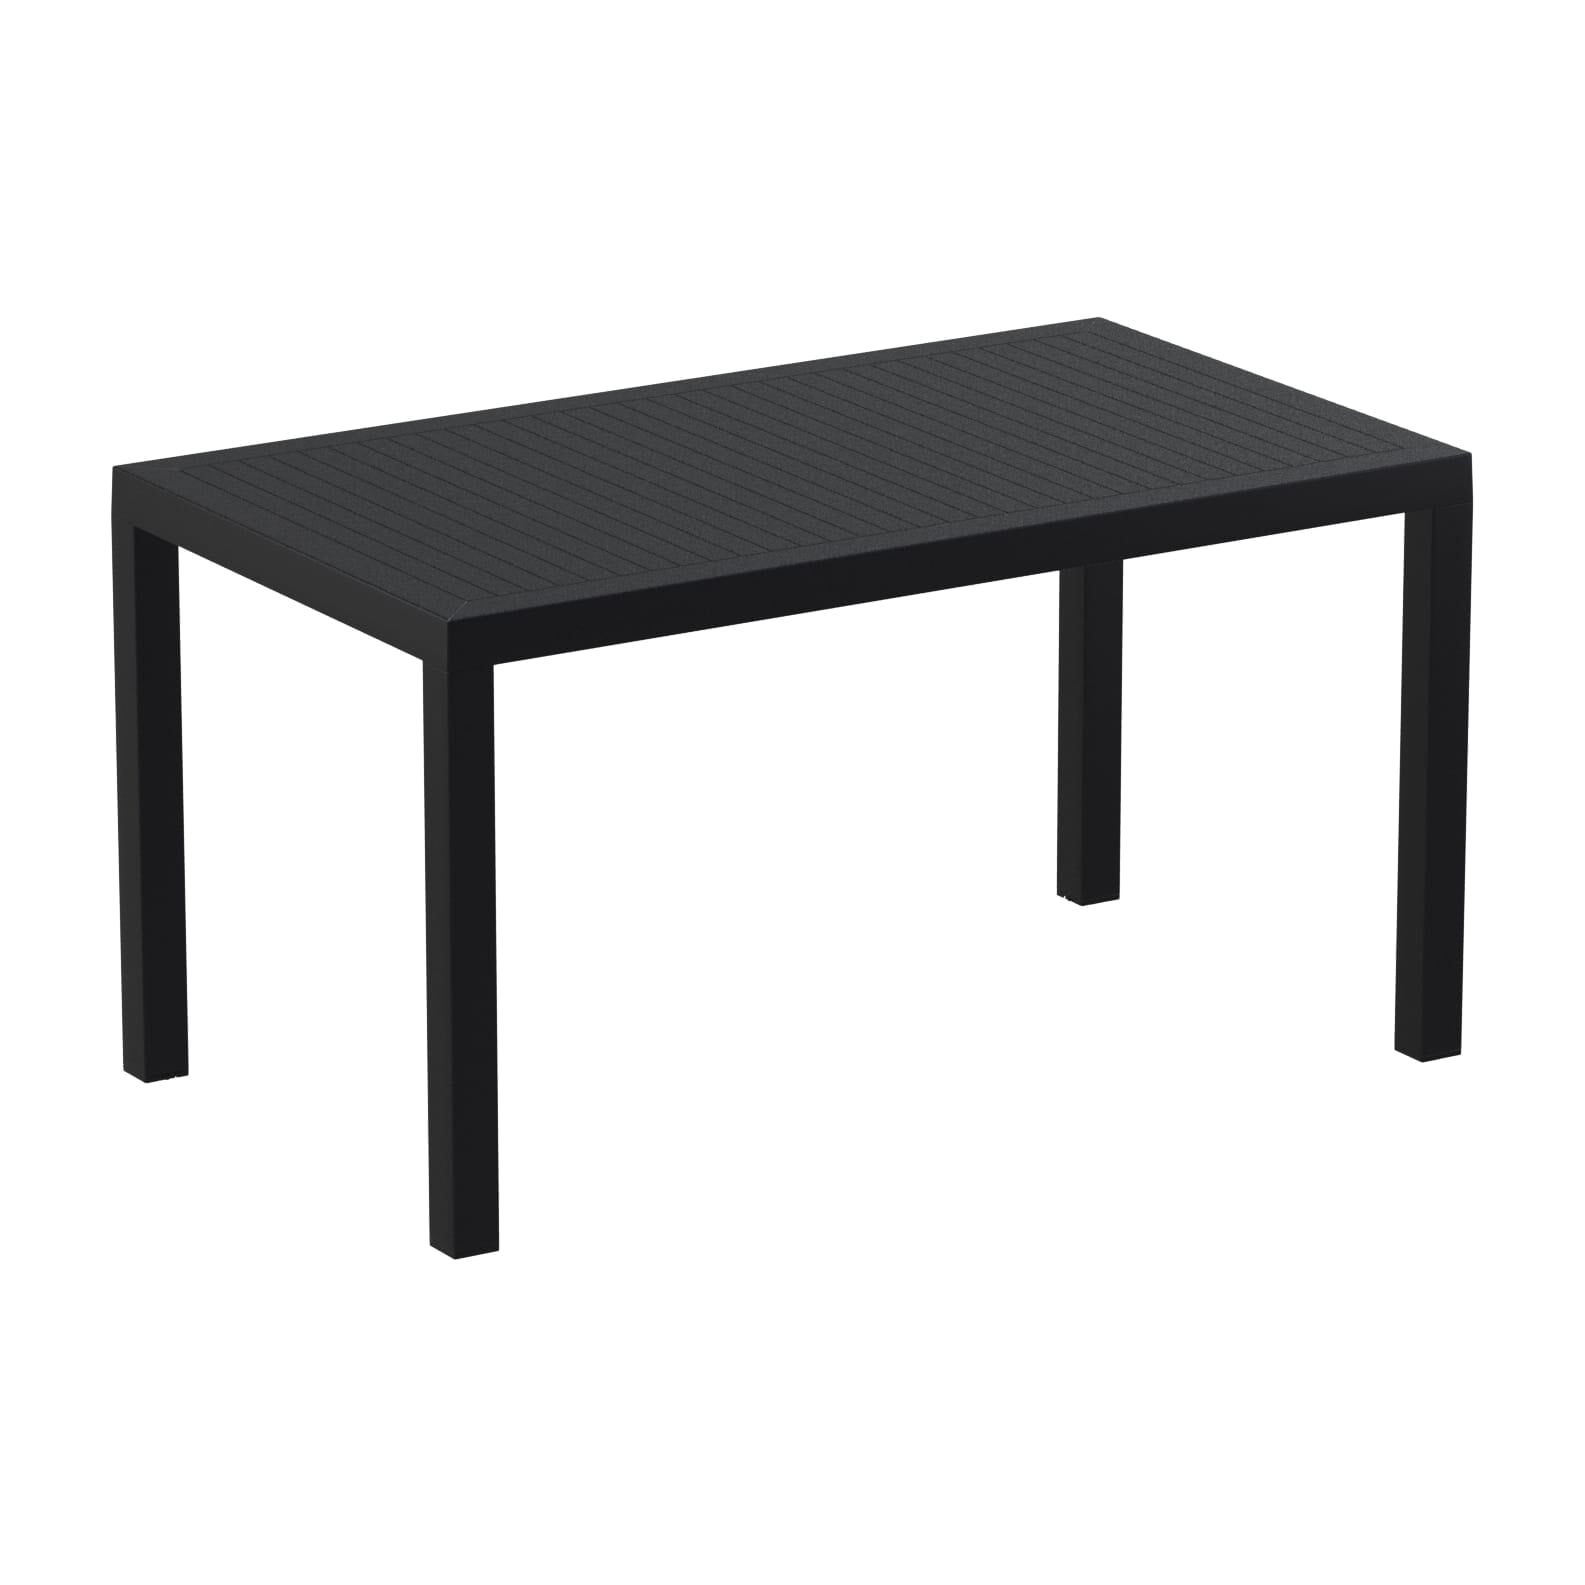 Garbar Arctic rectangular table indoors, outdoors 140x80